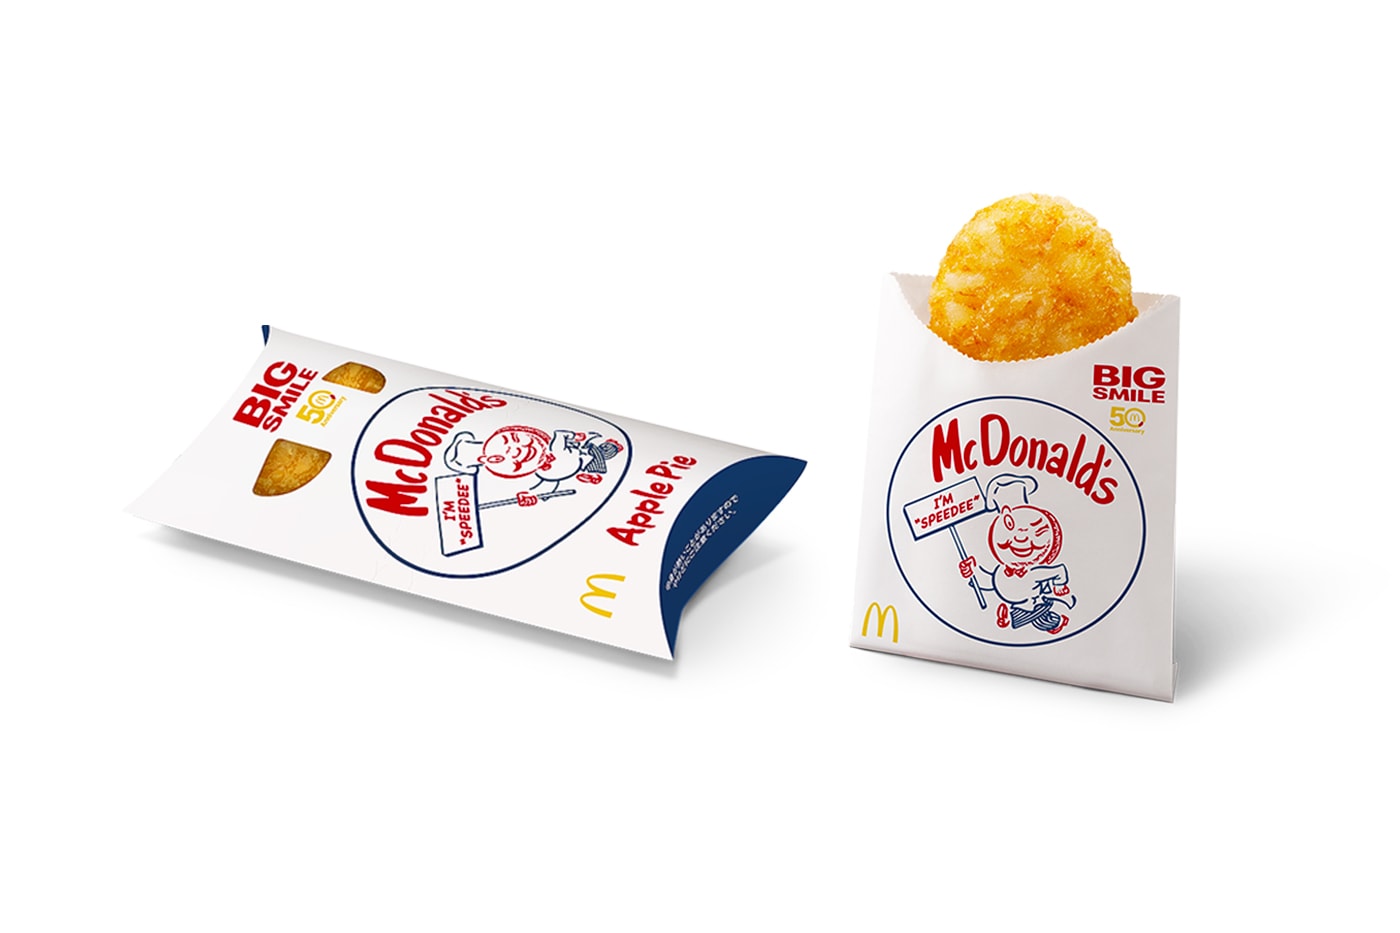 マクドナルドが日本上陸50周年を記念したヴィンテージデザインのパッケージを展開 McDonald’s Japan Original Speedee Mascot Return Info